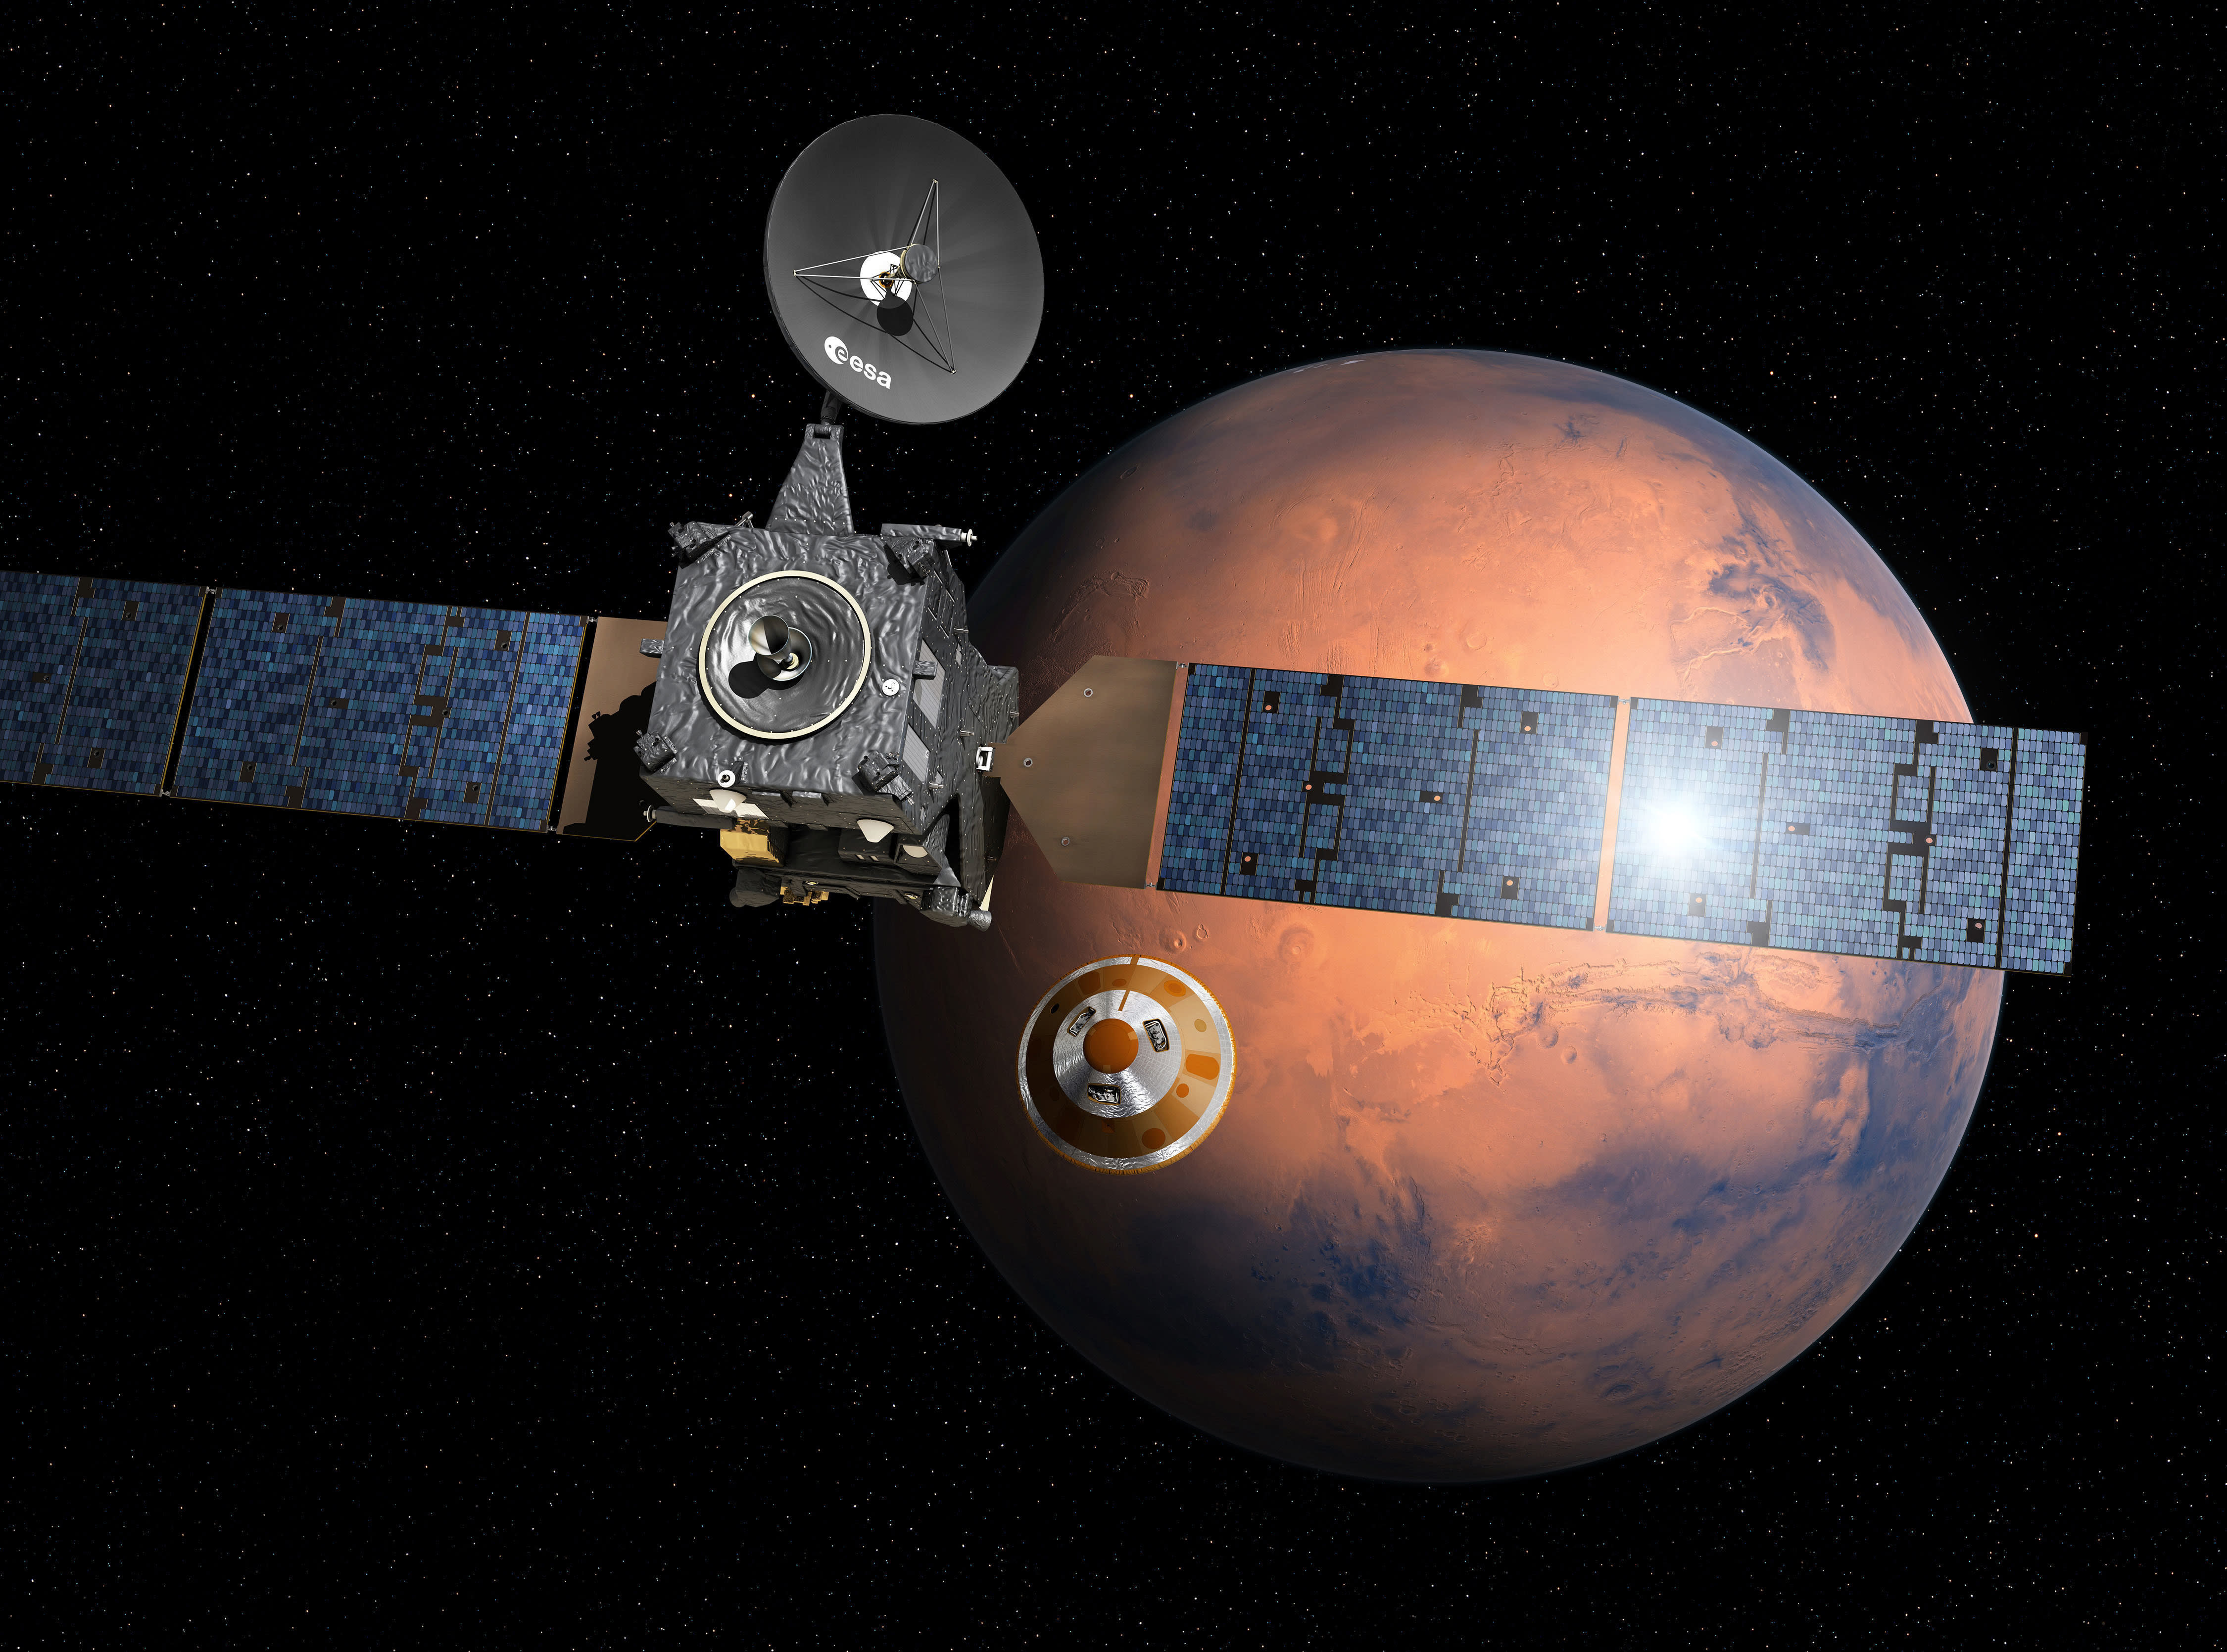 Hard crash-landing may have wrecked Europe's Mars probe